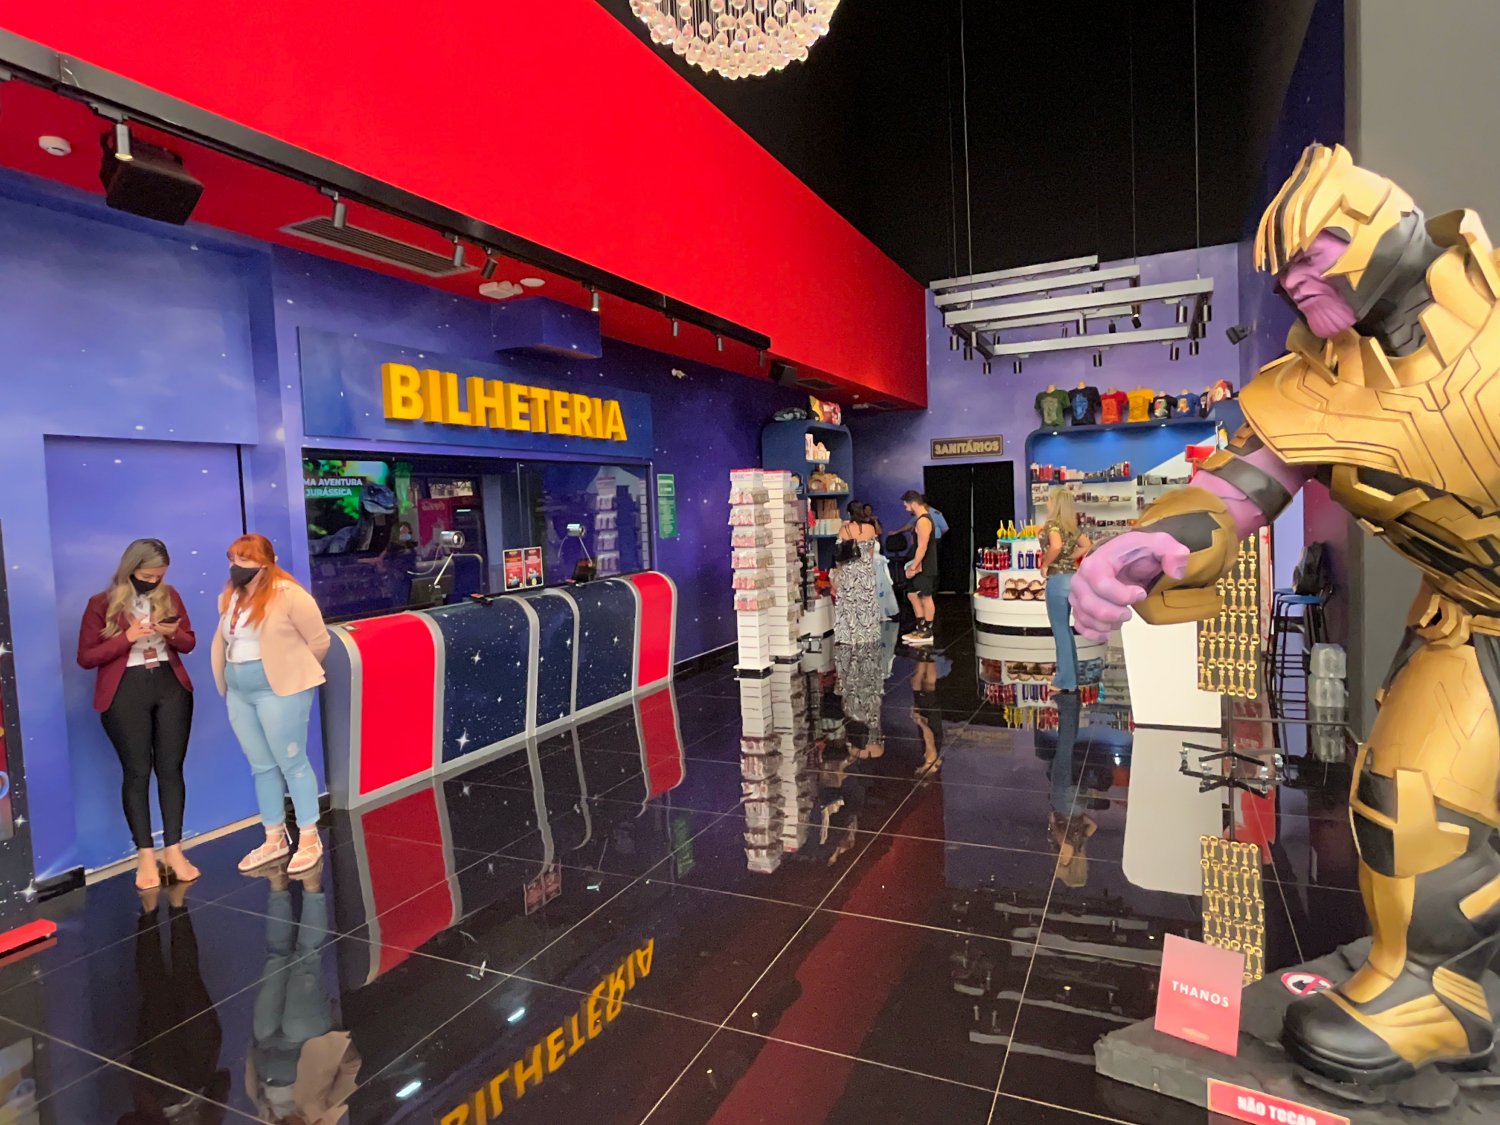 O Museu de cera de Olímpia, que conta com mais de 70 personagens em tamanho real, uma otima opção para passear em Olímpia-SP